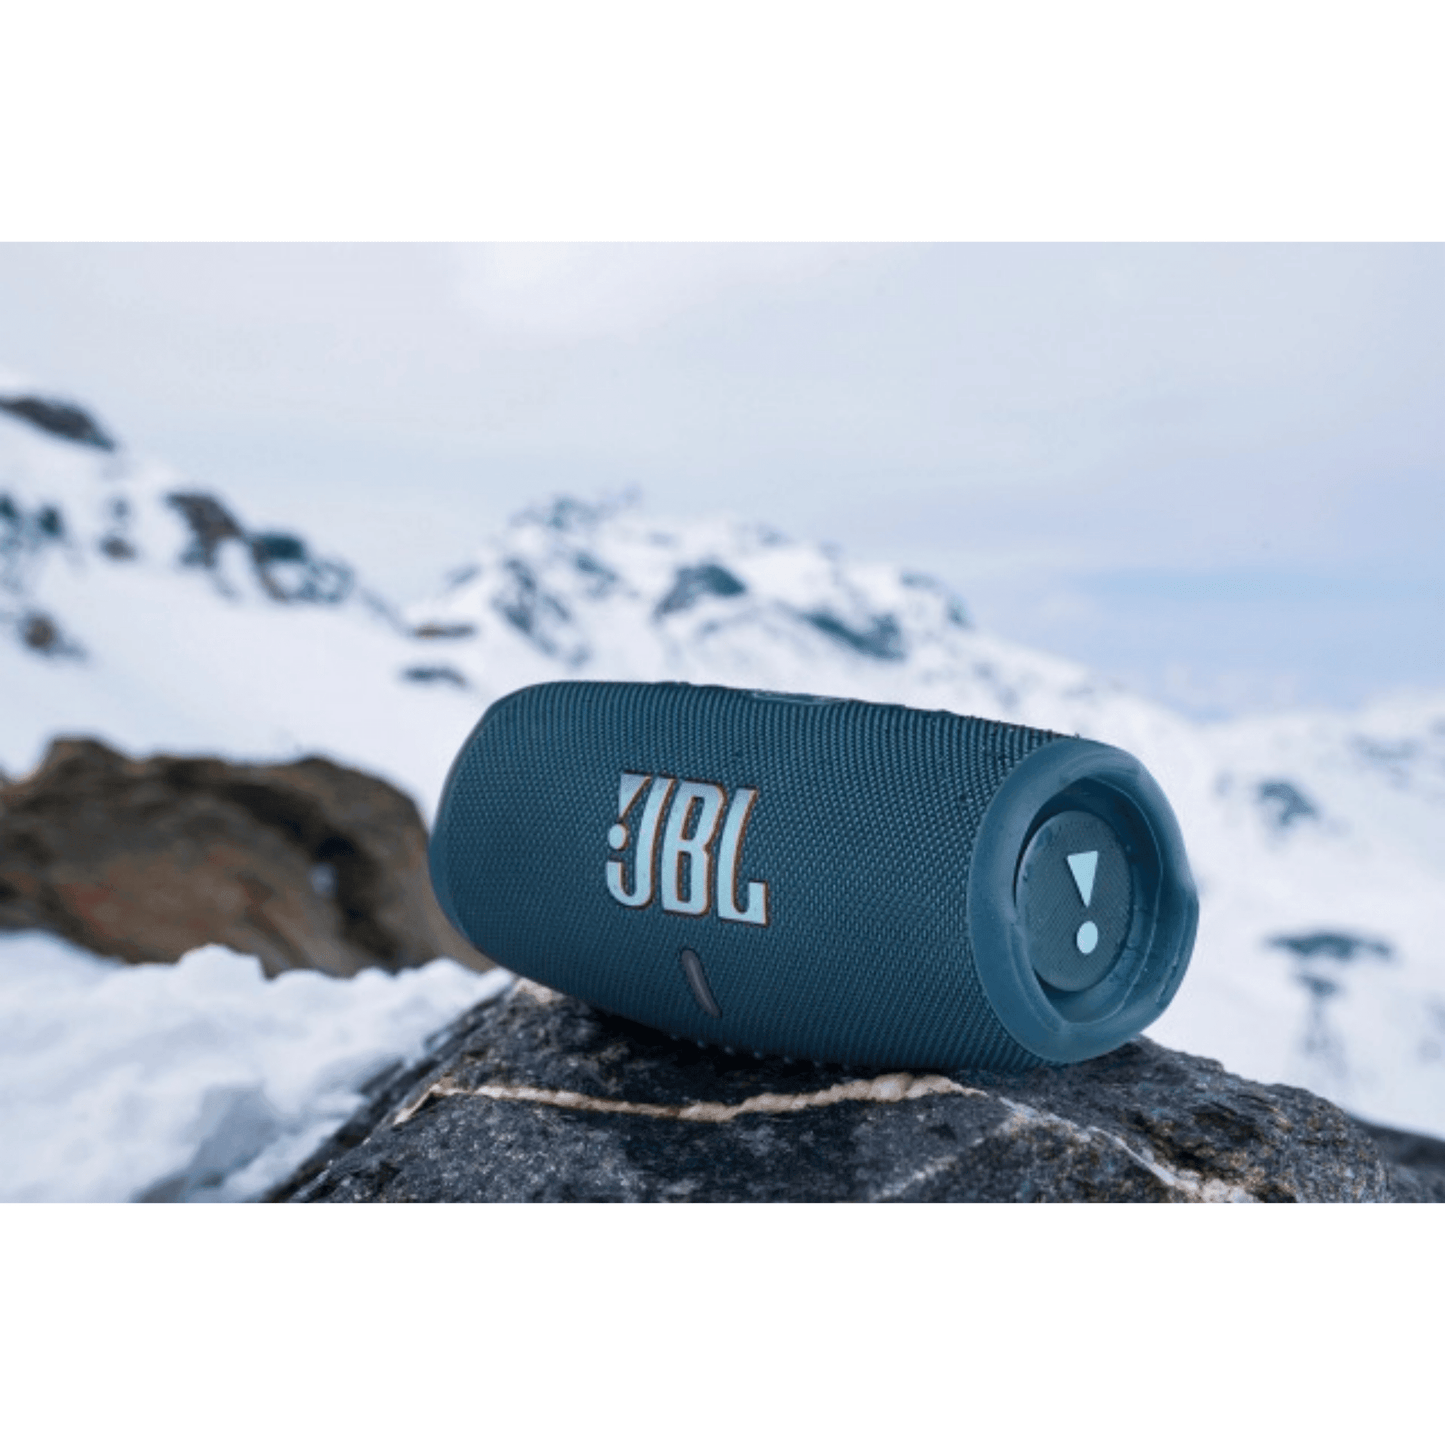 JBL - Charge 5 Bluetooth Lautsprecher - Blau - Pazzar.ch